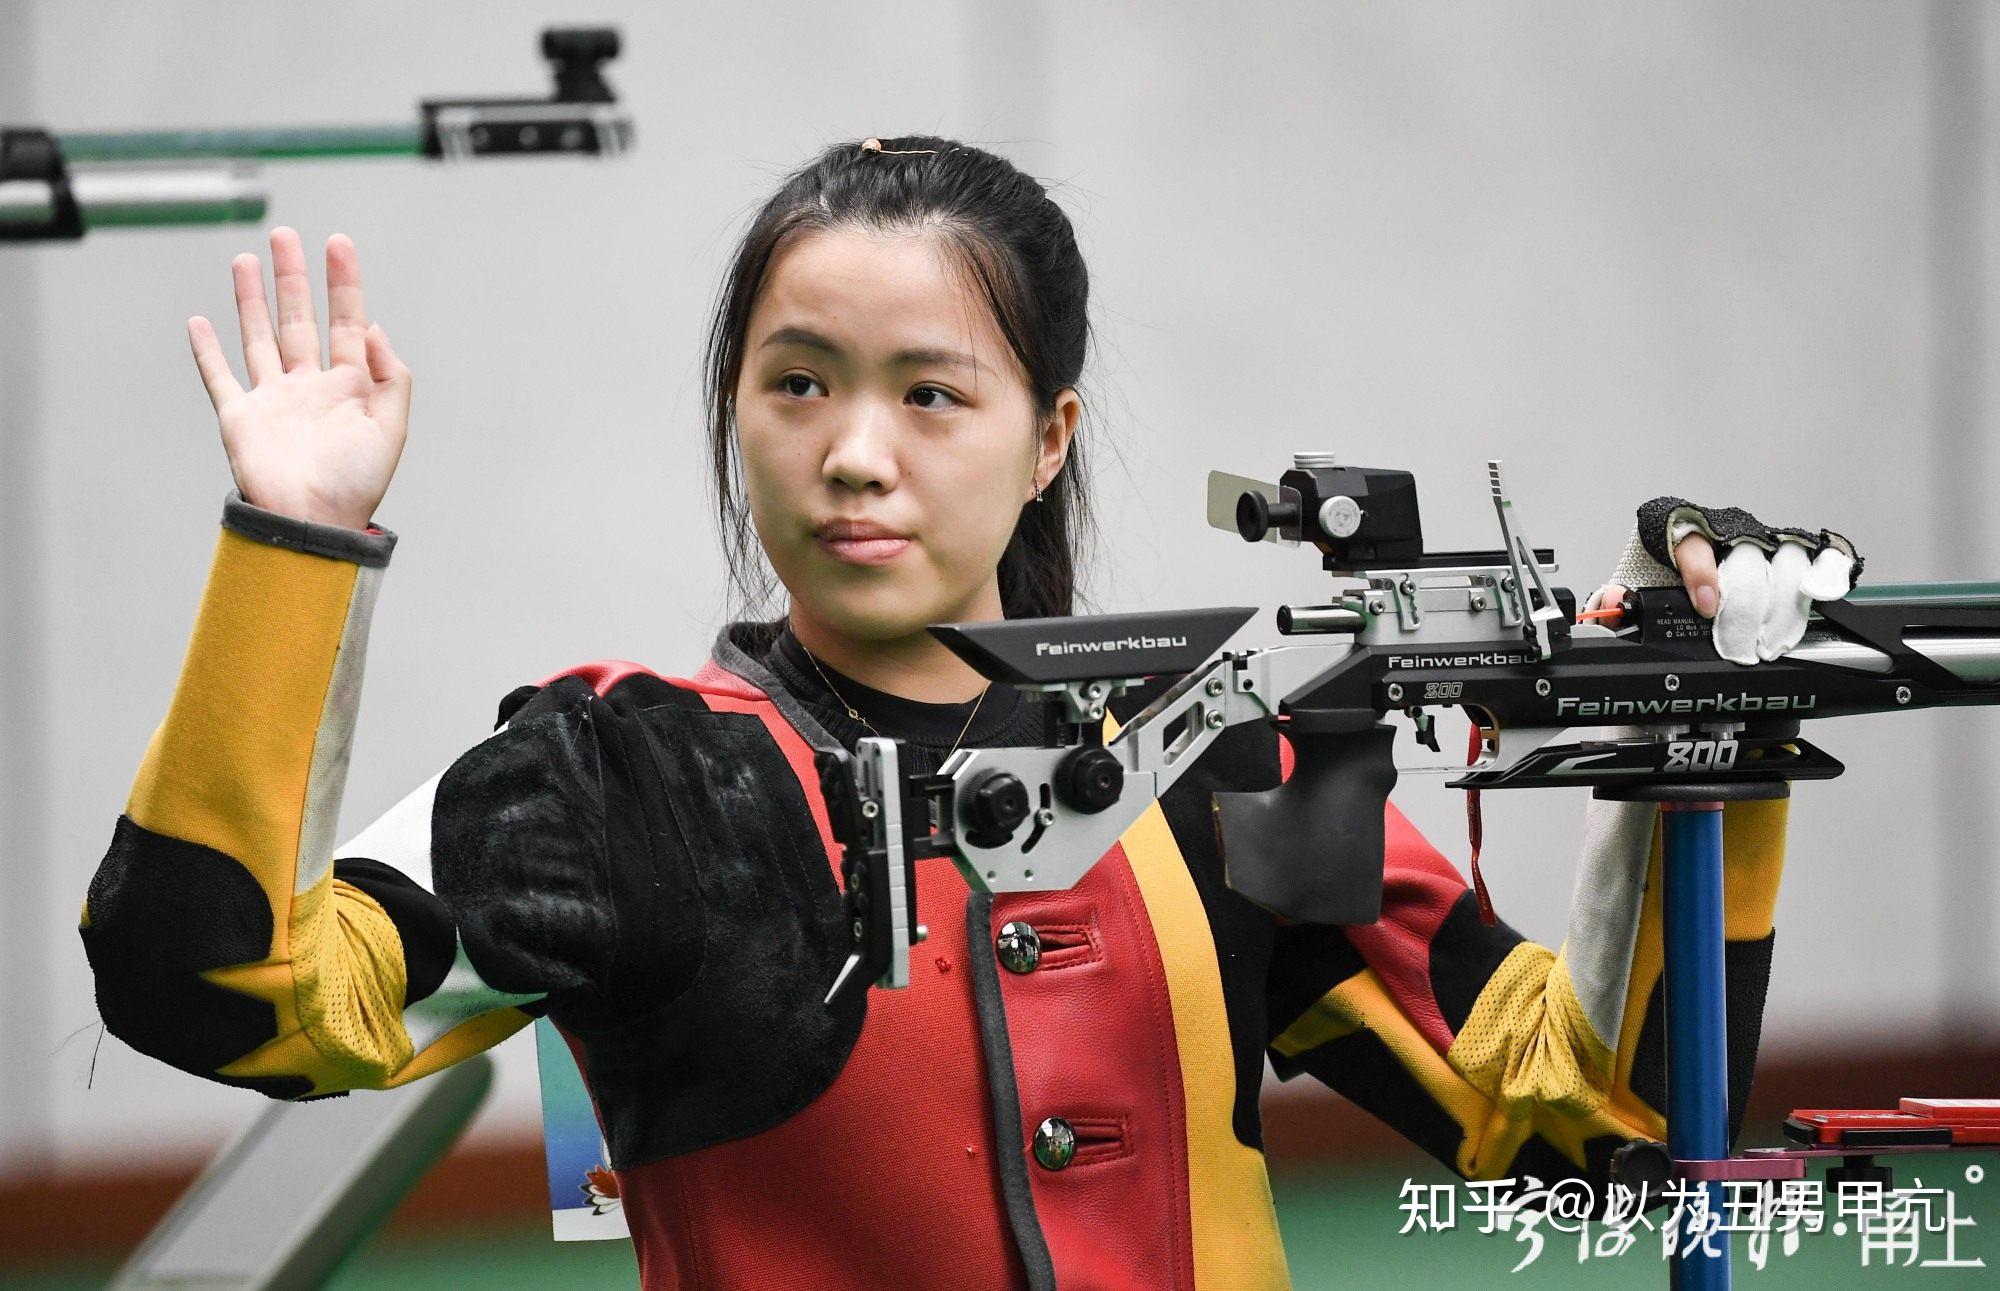 可爱奥运首金获得者杨倩在领奖台上比心